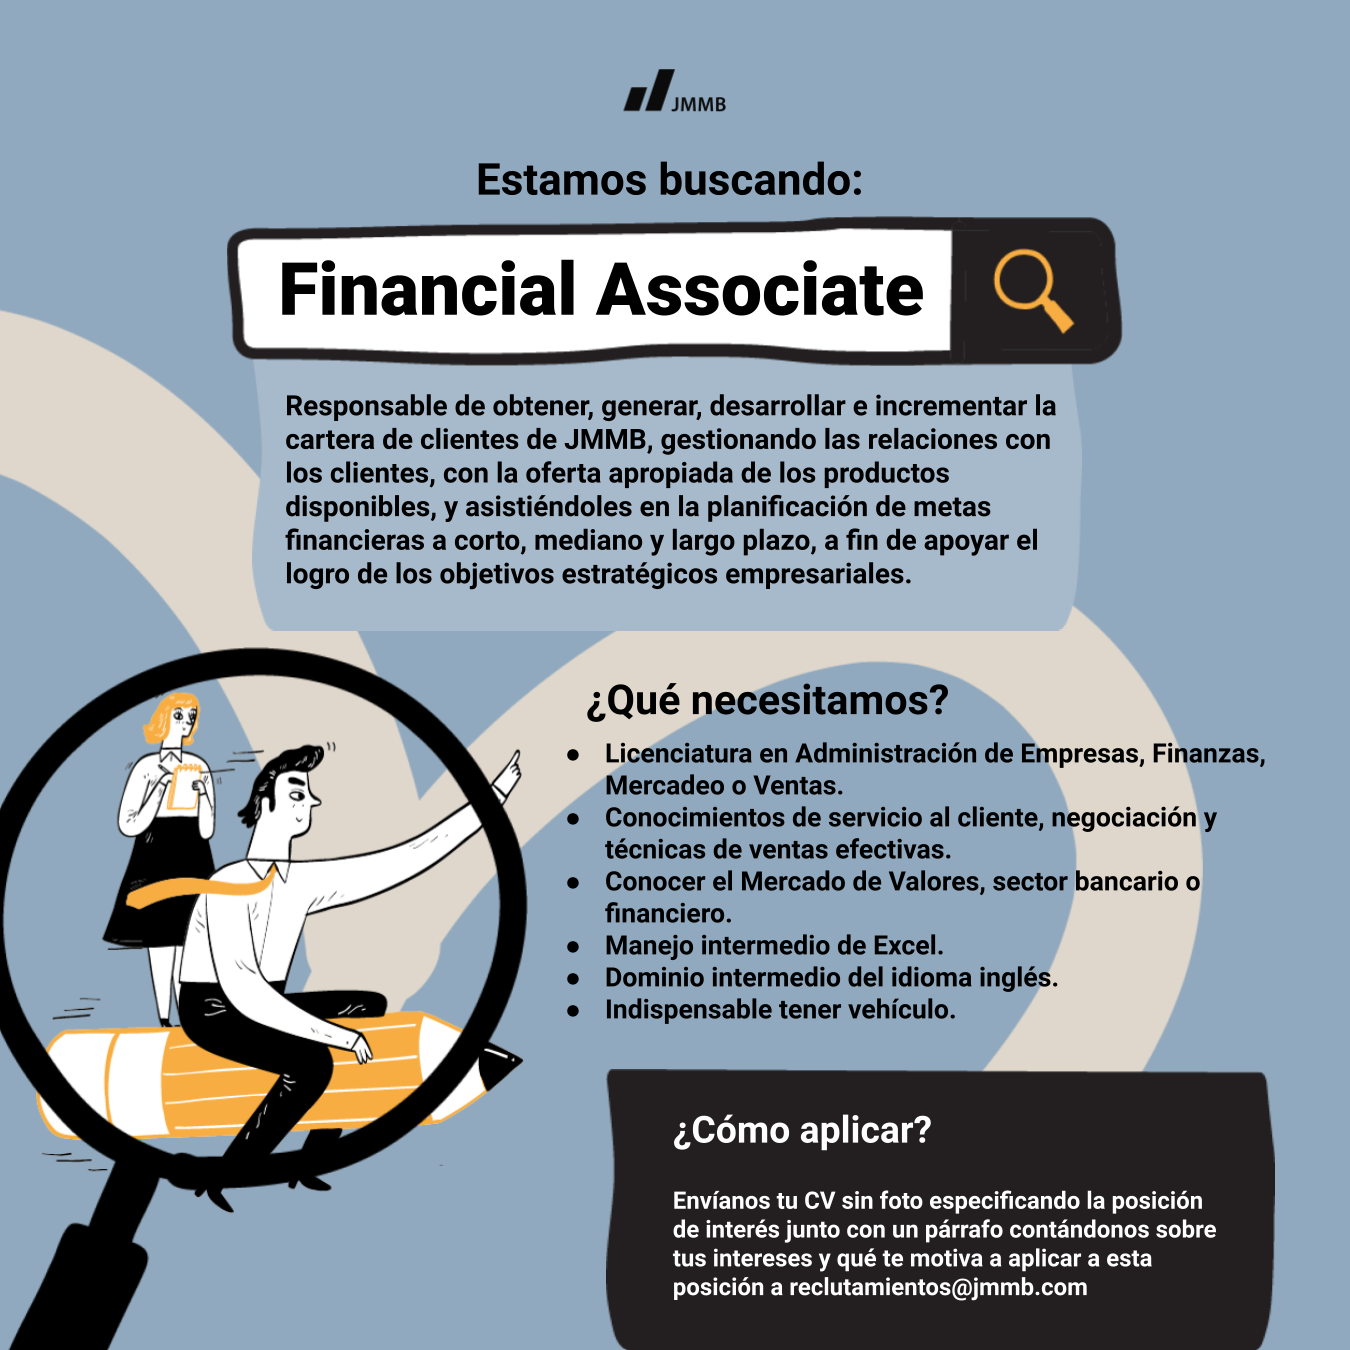 Financial Associate